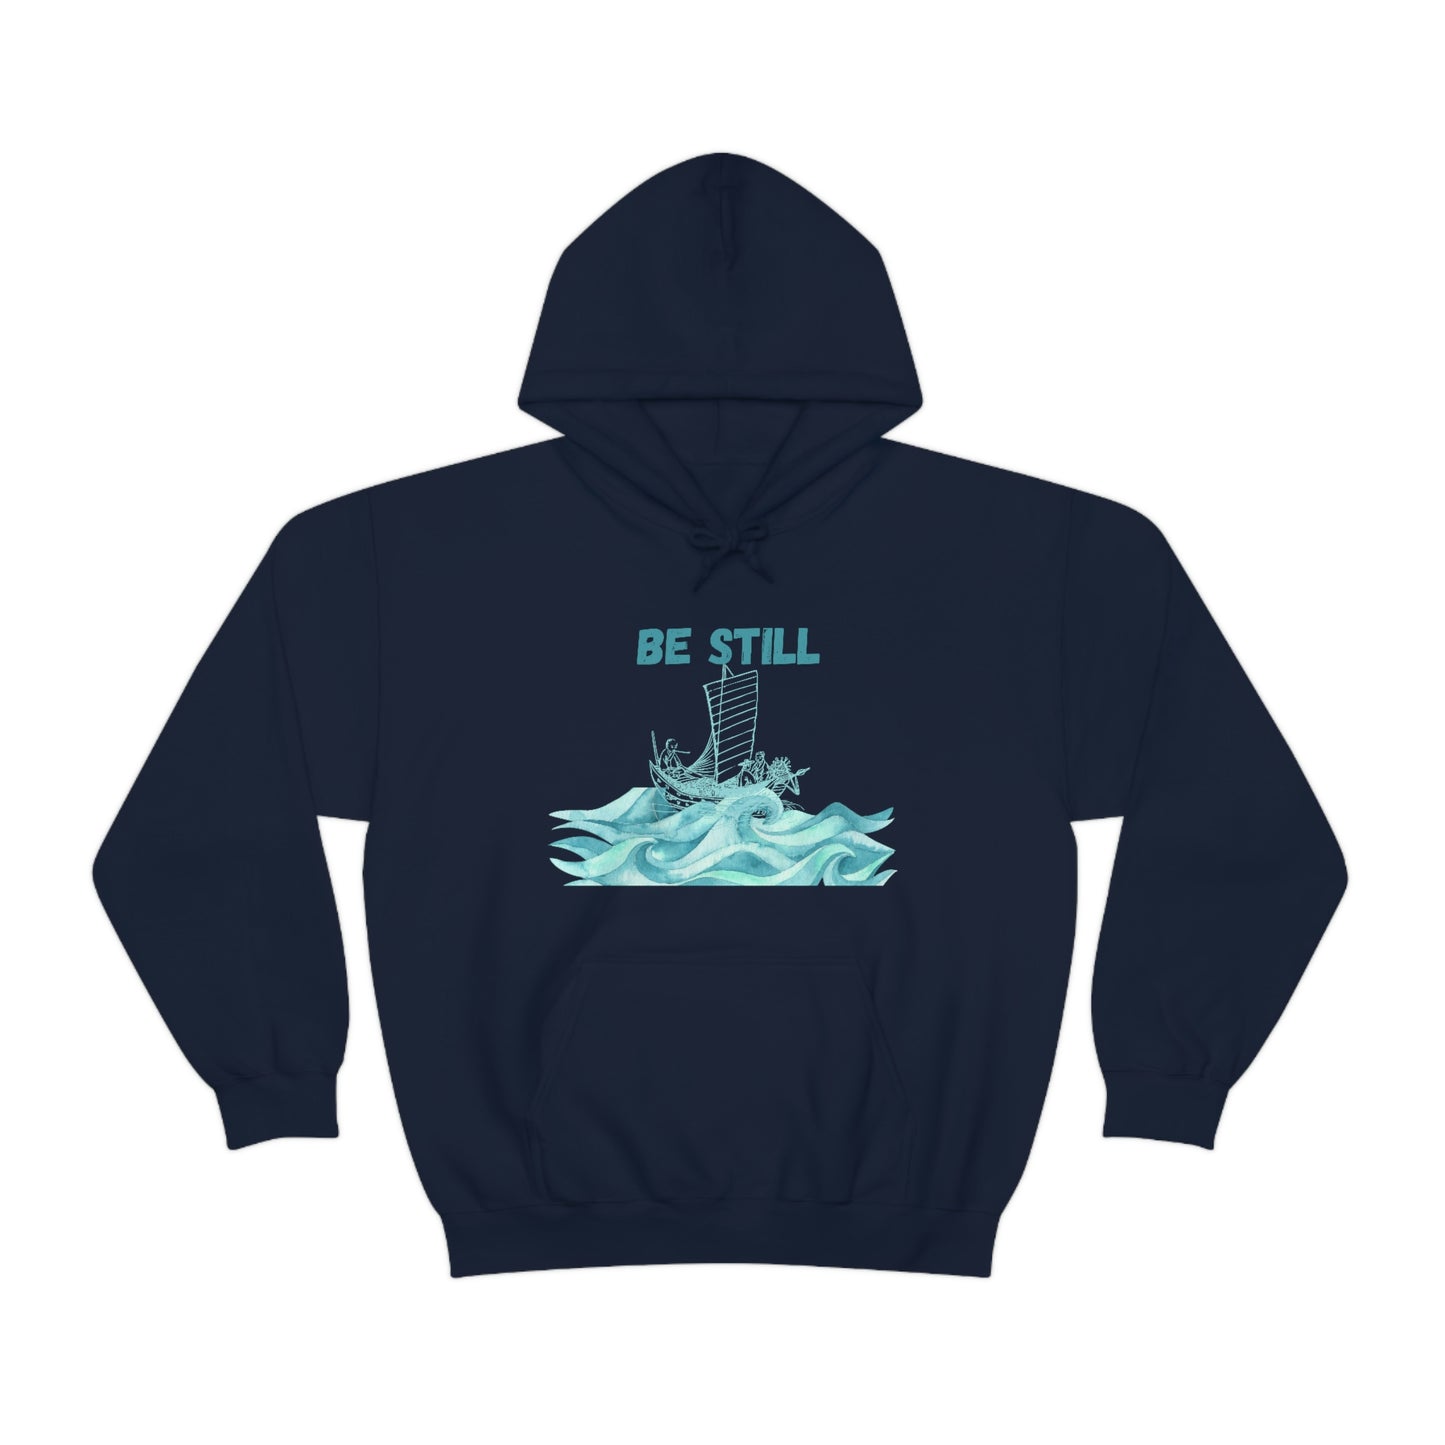 Be Still - Men's Christian Hooded Sweatshirt